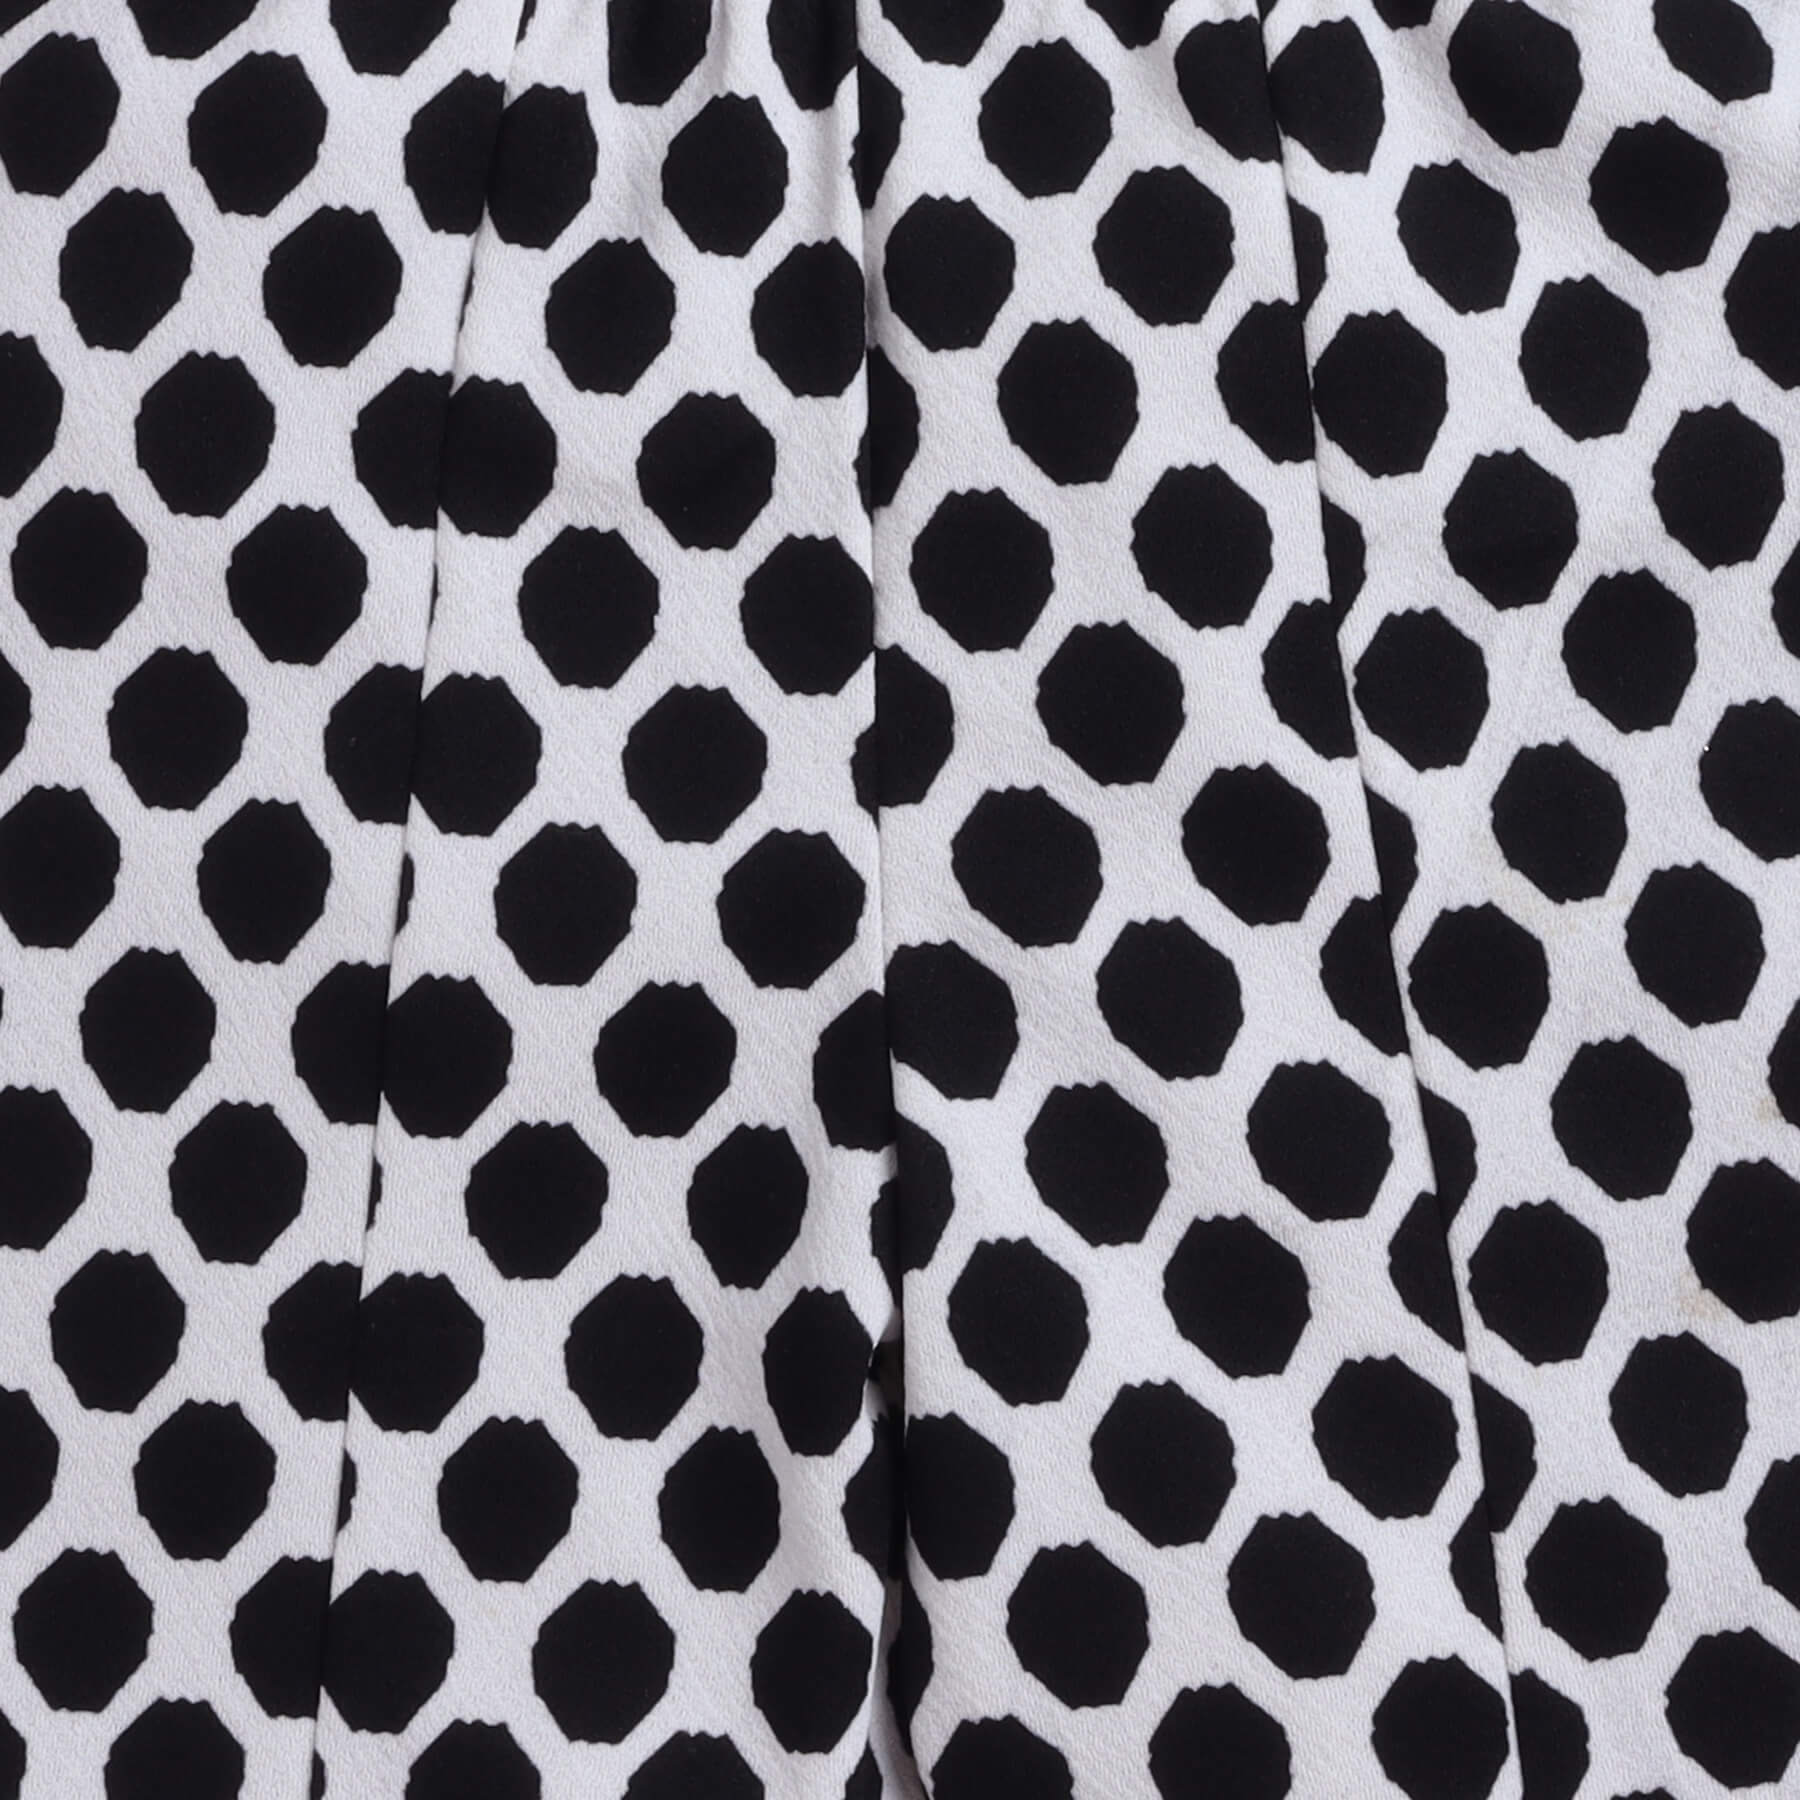 Taffykids Geometric printed front slit full length bell bottom pant-Black/White